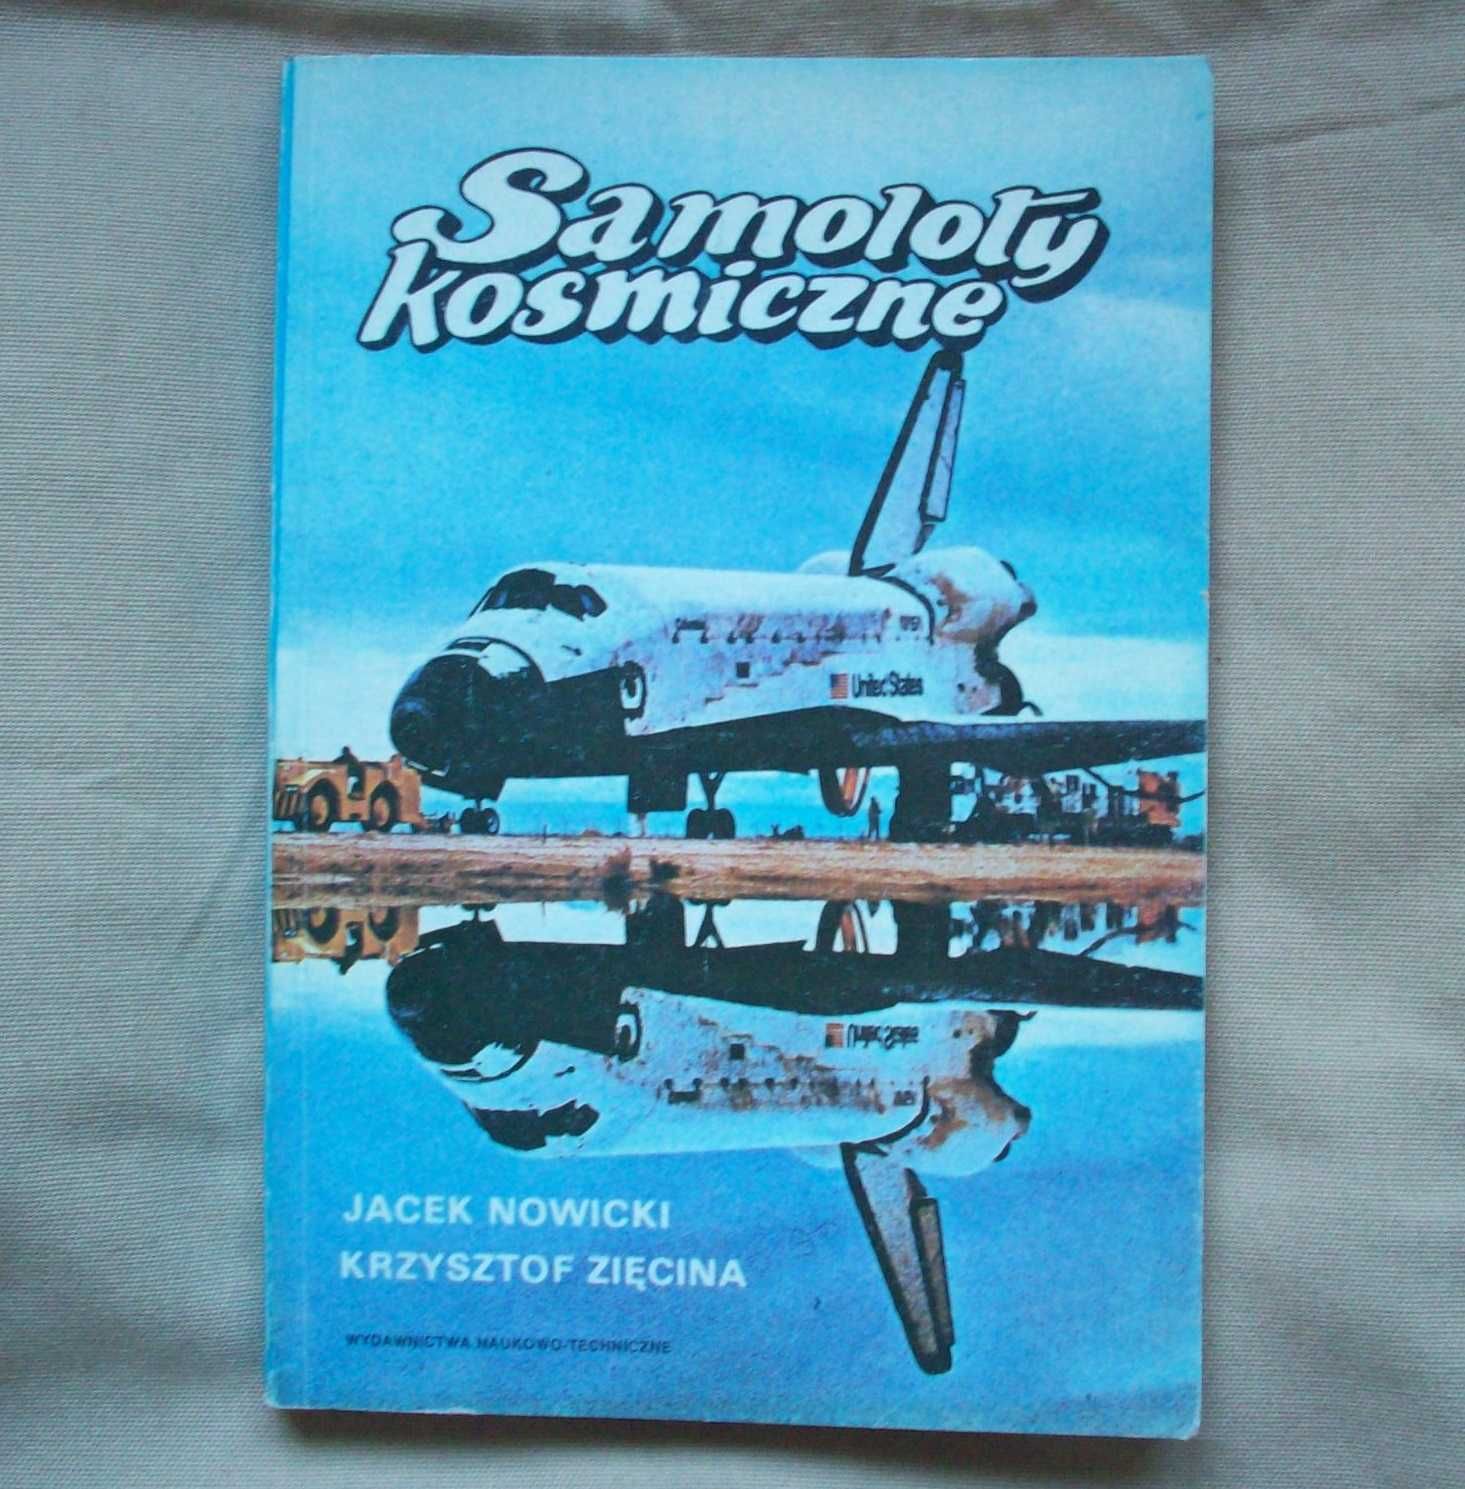 Samoloty kosmiczne, J.Nowicki, K.Zięcina, 1989.